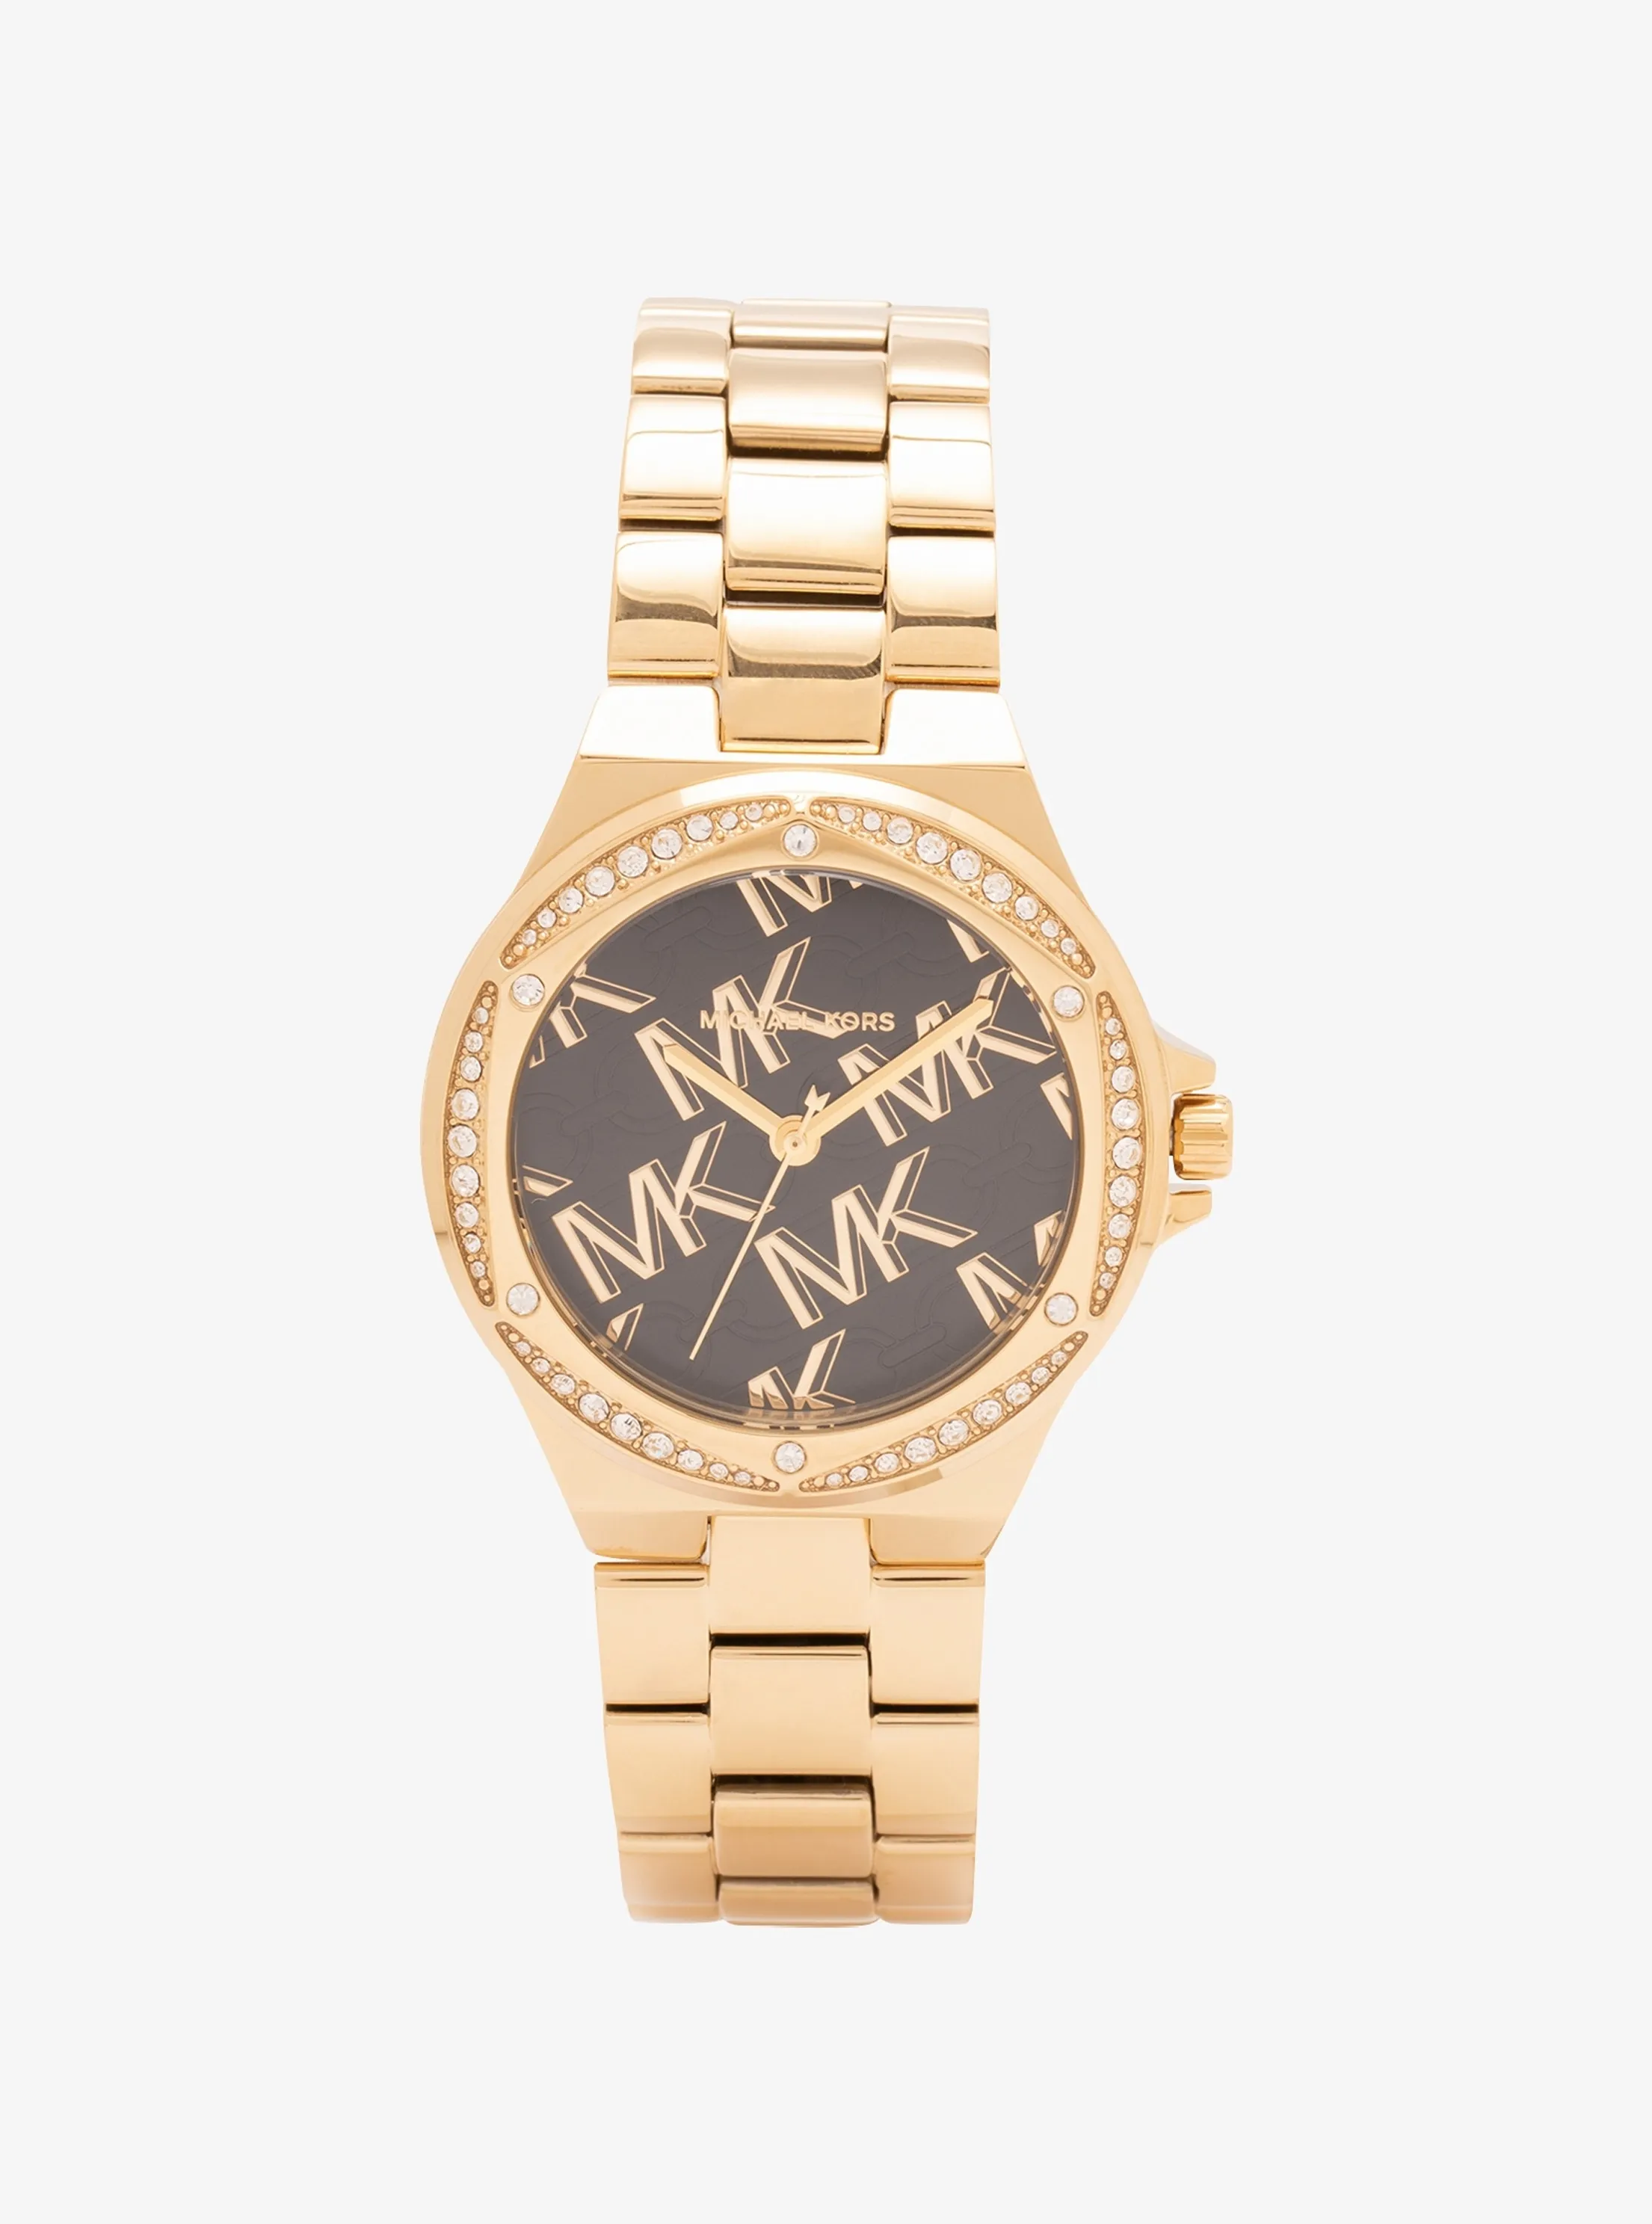 MK女士手表-MK女士腕表-链式腕表-MICHAEL KORS中国官方在线精品店